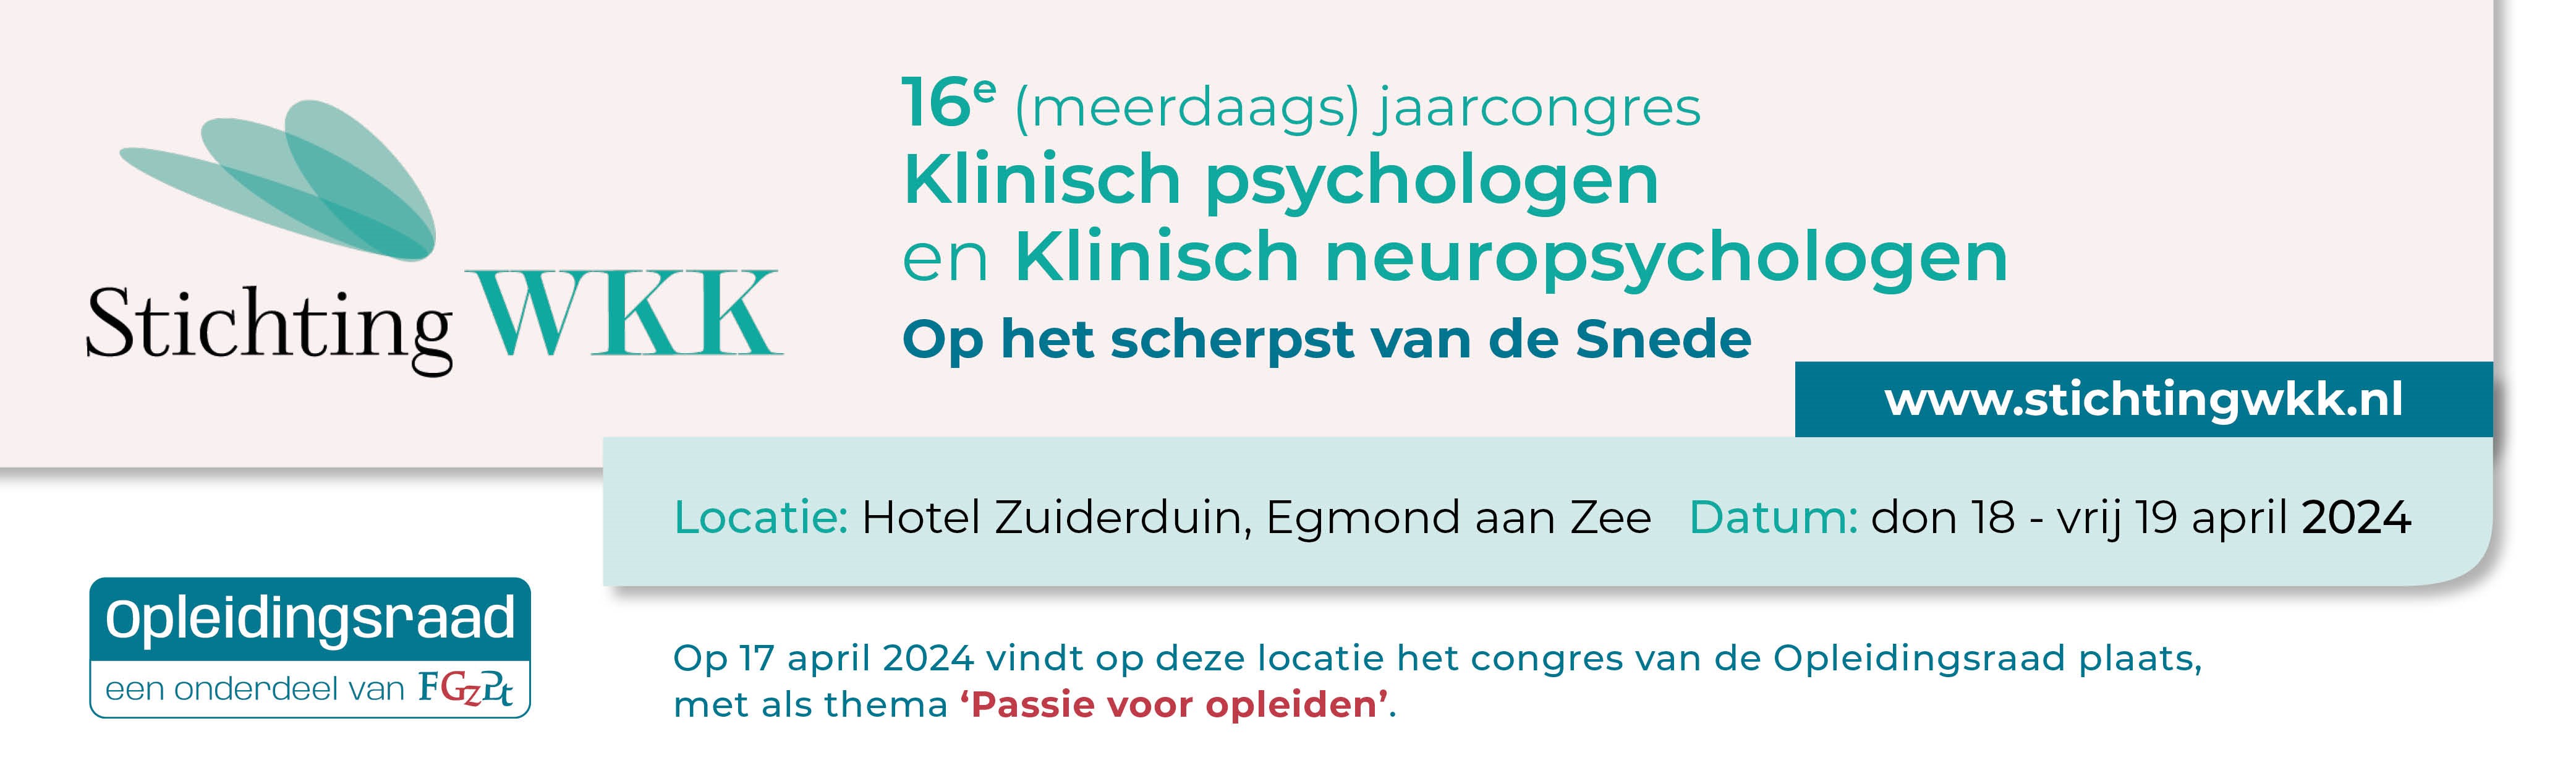 16e (meerdaags) jaarcongres Klinisch psychologen en Klinisch neuropsychologen